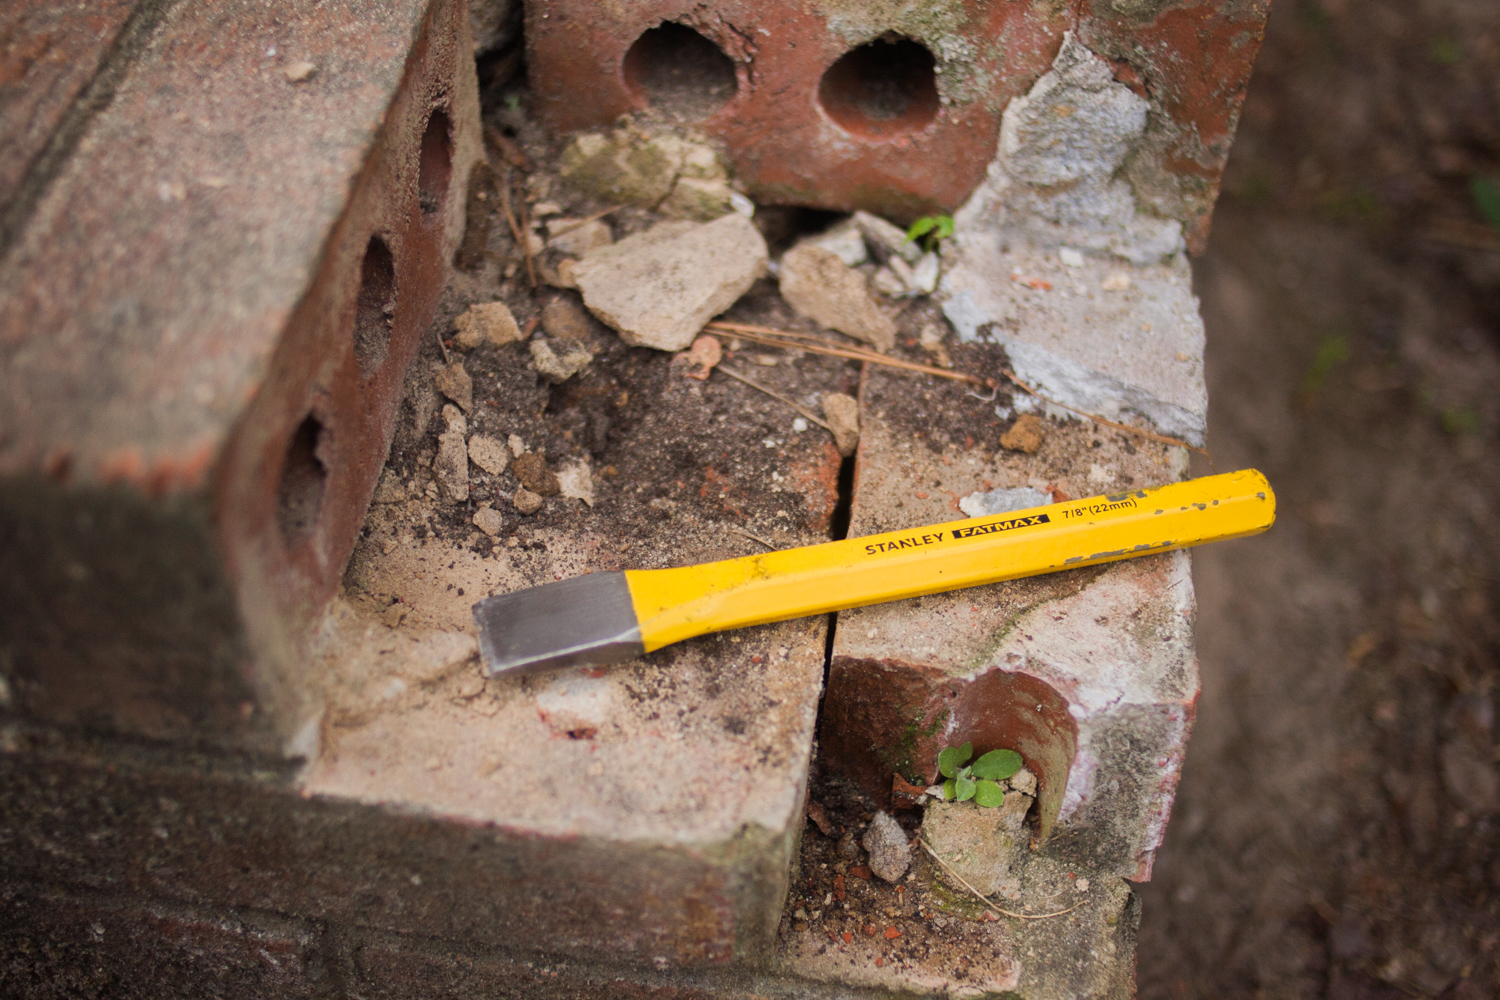 How to: Simple DIY Brick and Mortar Repair | Man Made DIY | Crafts for Men